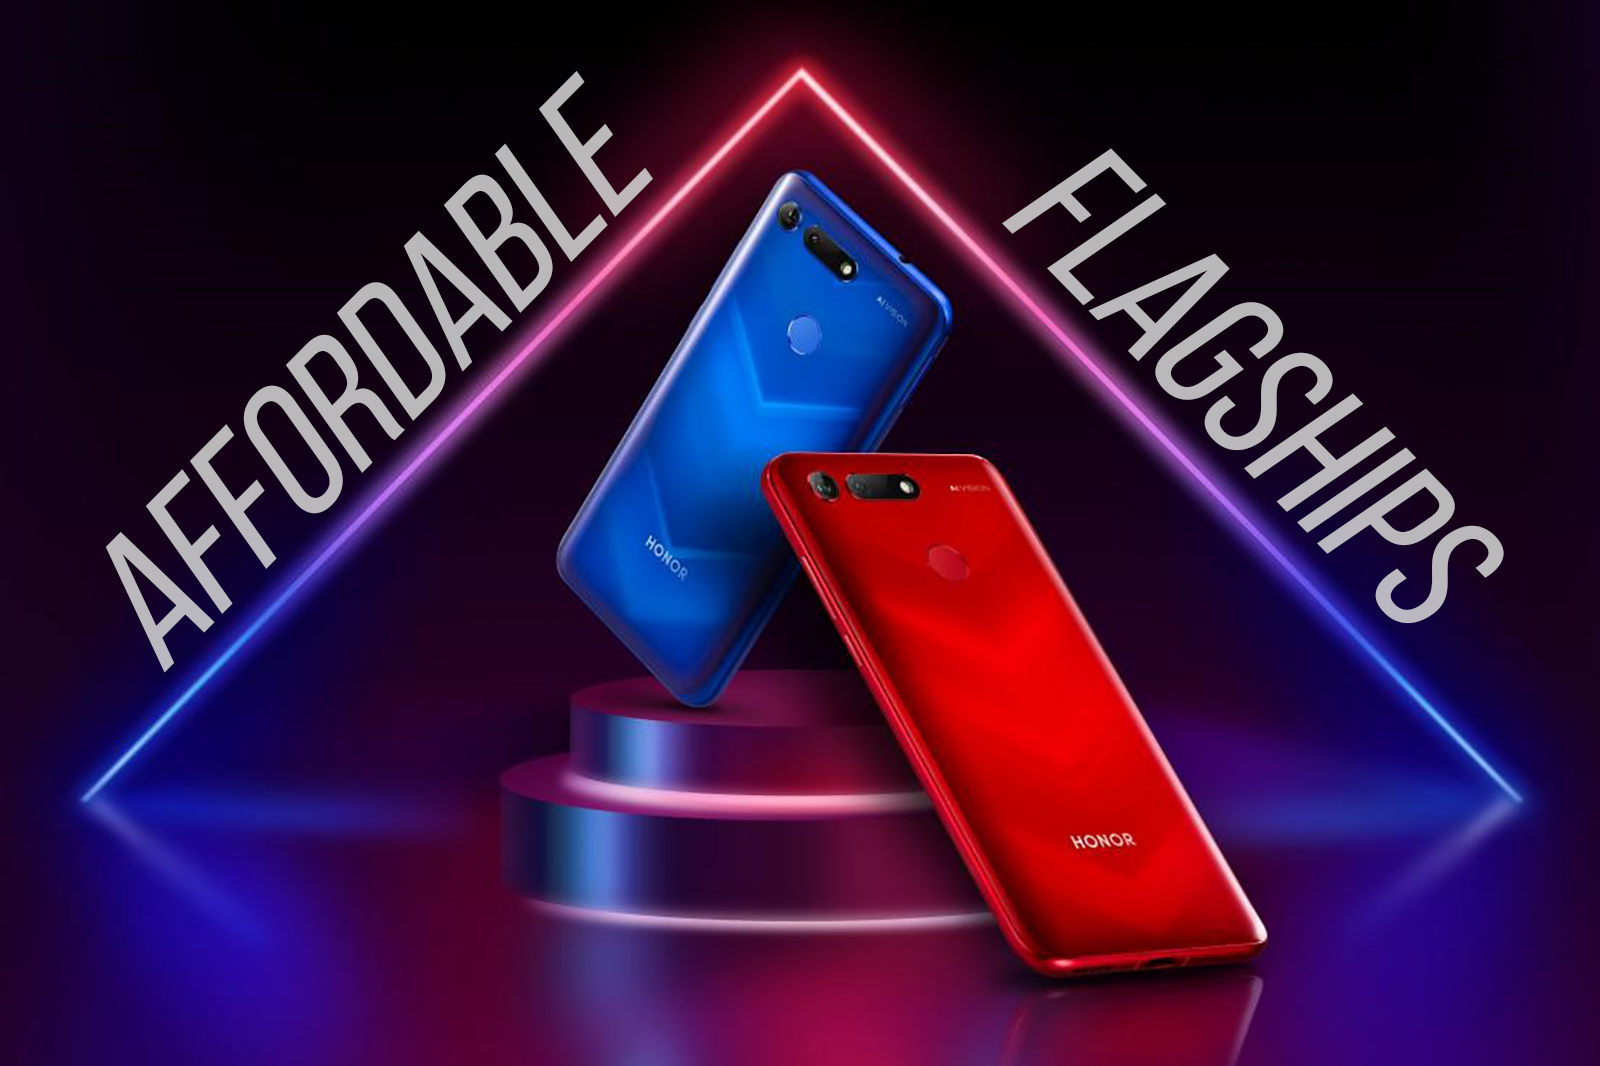 Melhores telefones "flagship acessíveis" em 2019